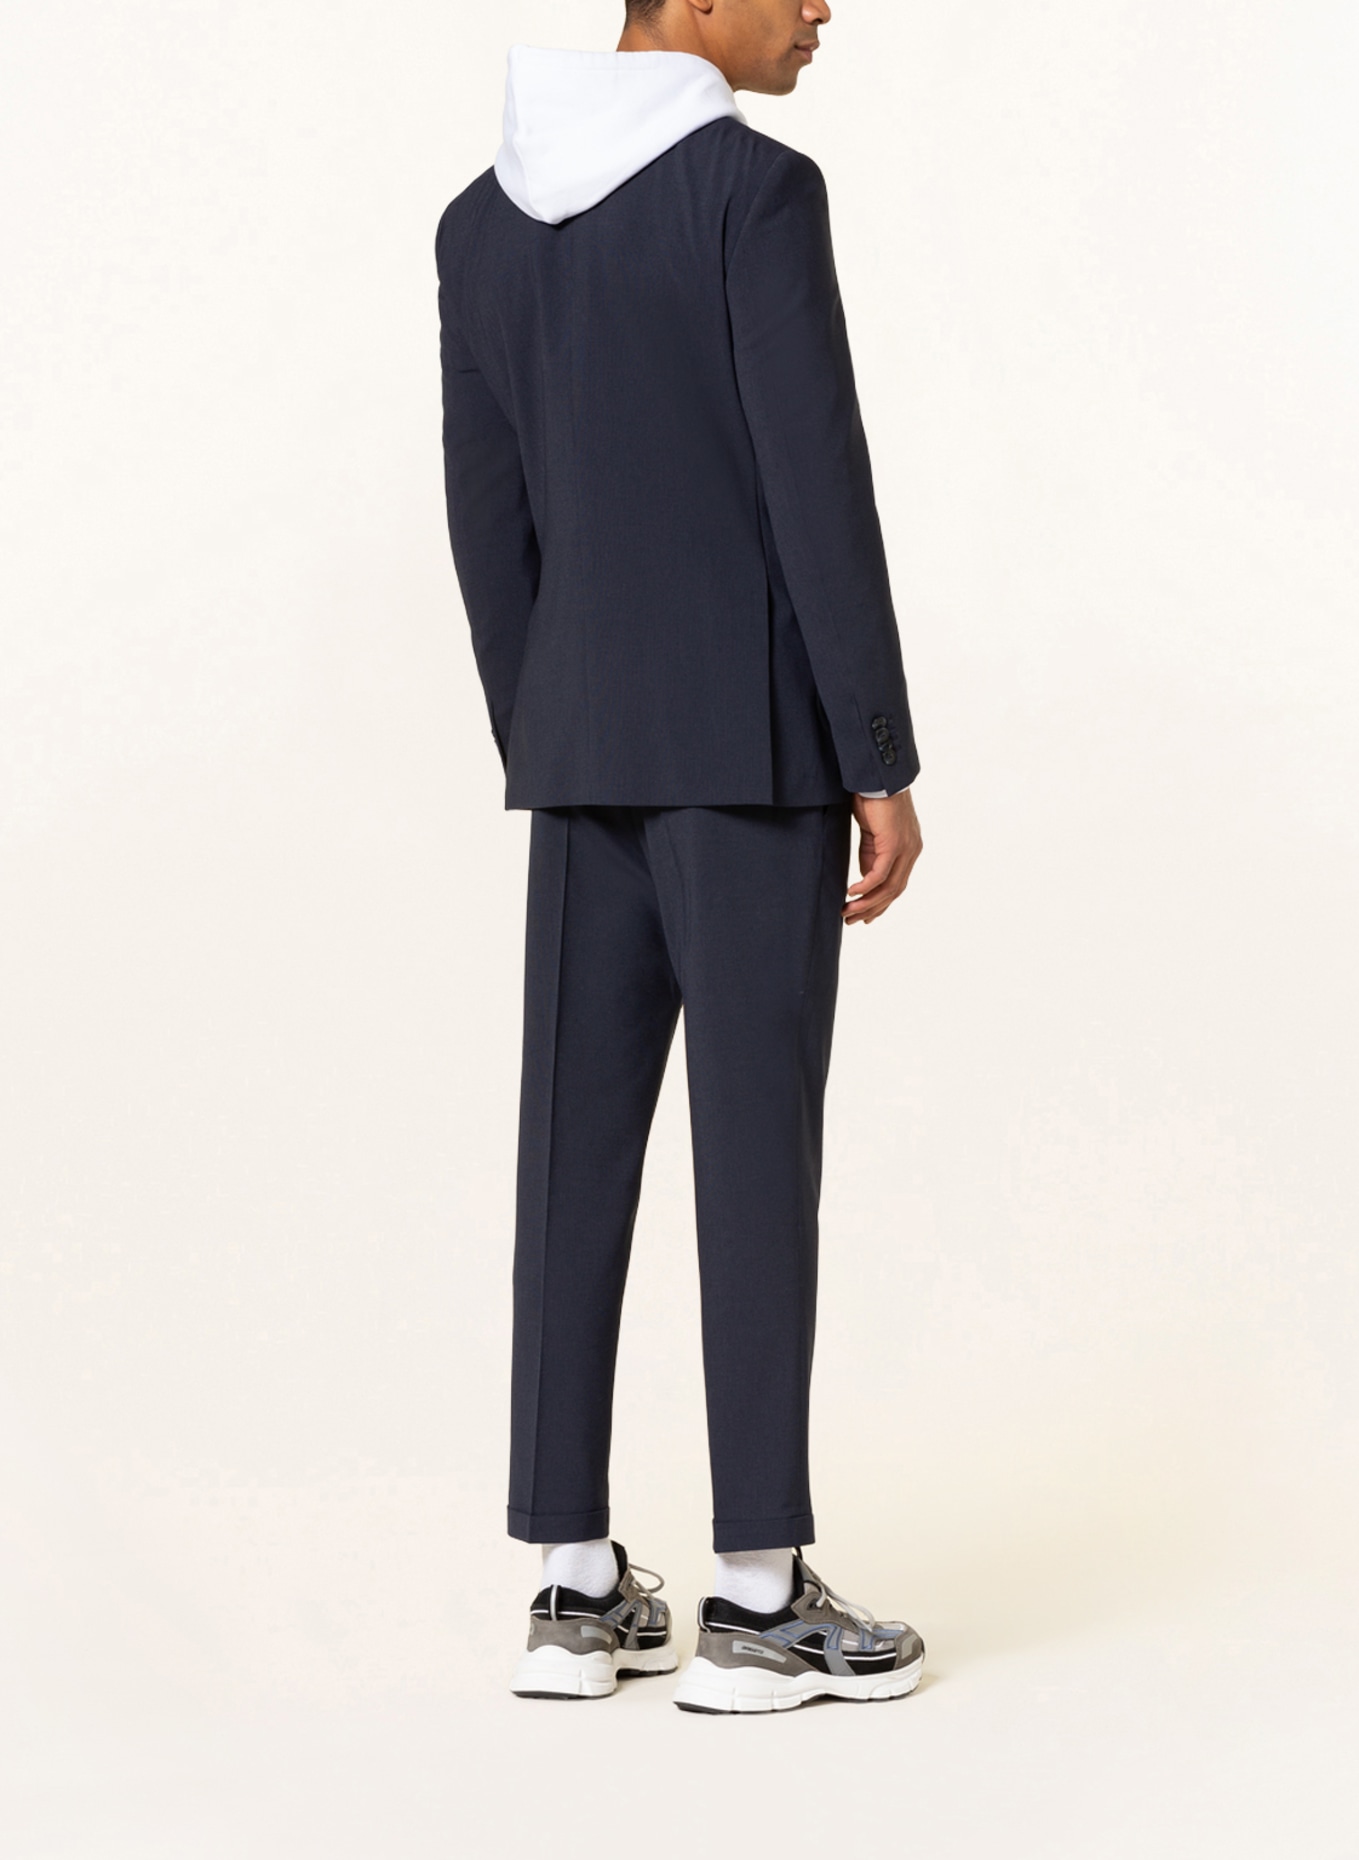 SPSR Suit jacket extra slim fit , Color: 53C3009 Houndstooth Blue (Image 3)